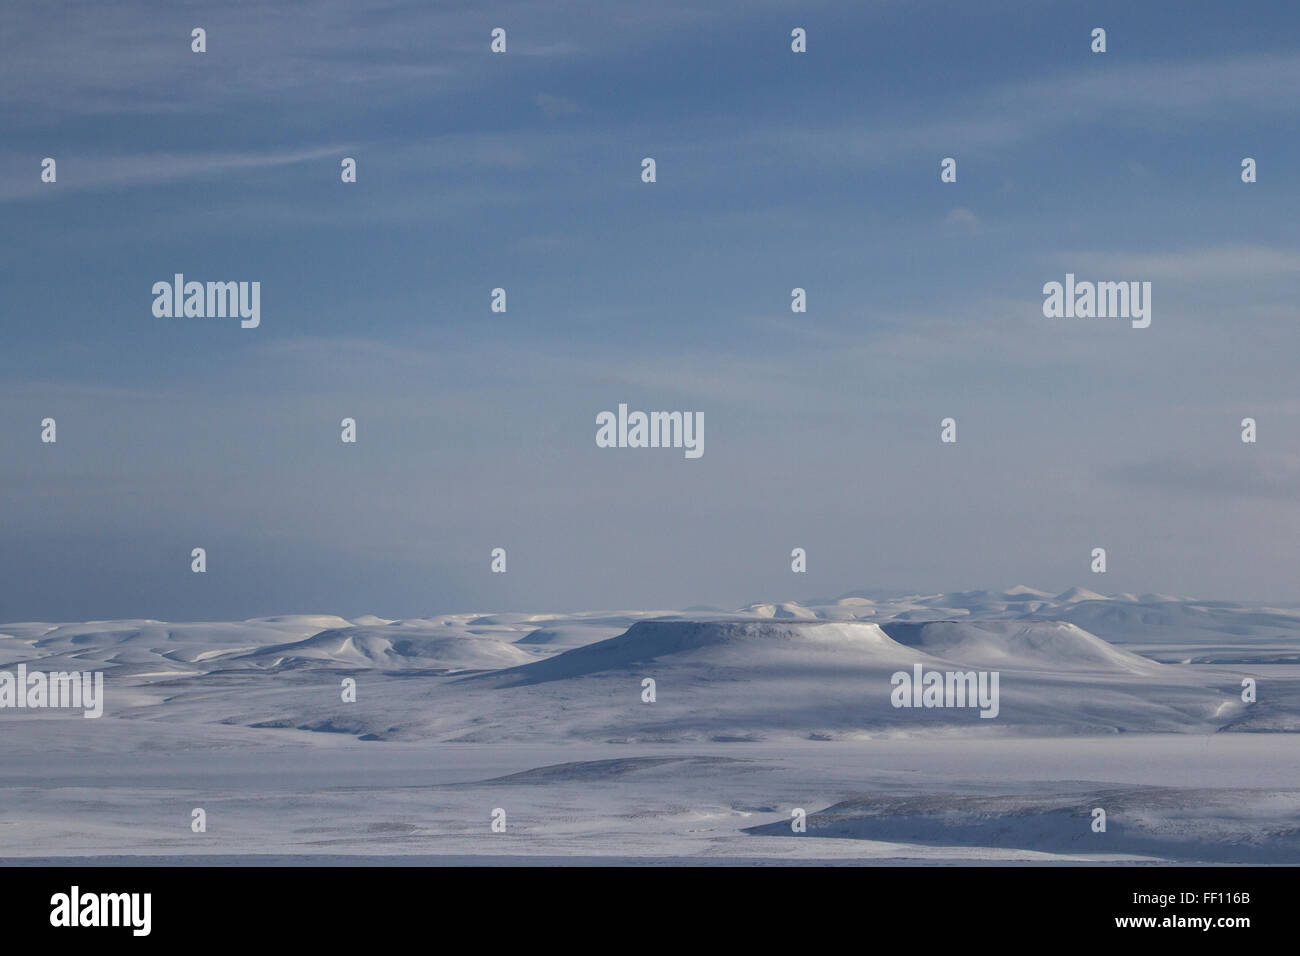 Panorama de invierno en el norte de la isla de Bering en un día soleado Foto de stock